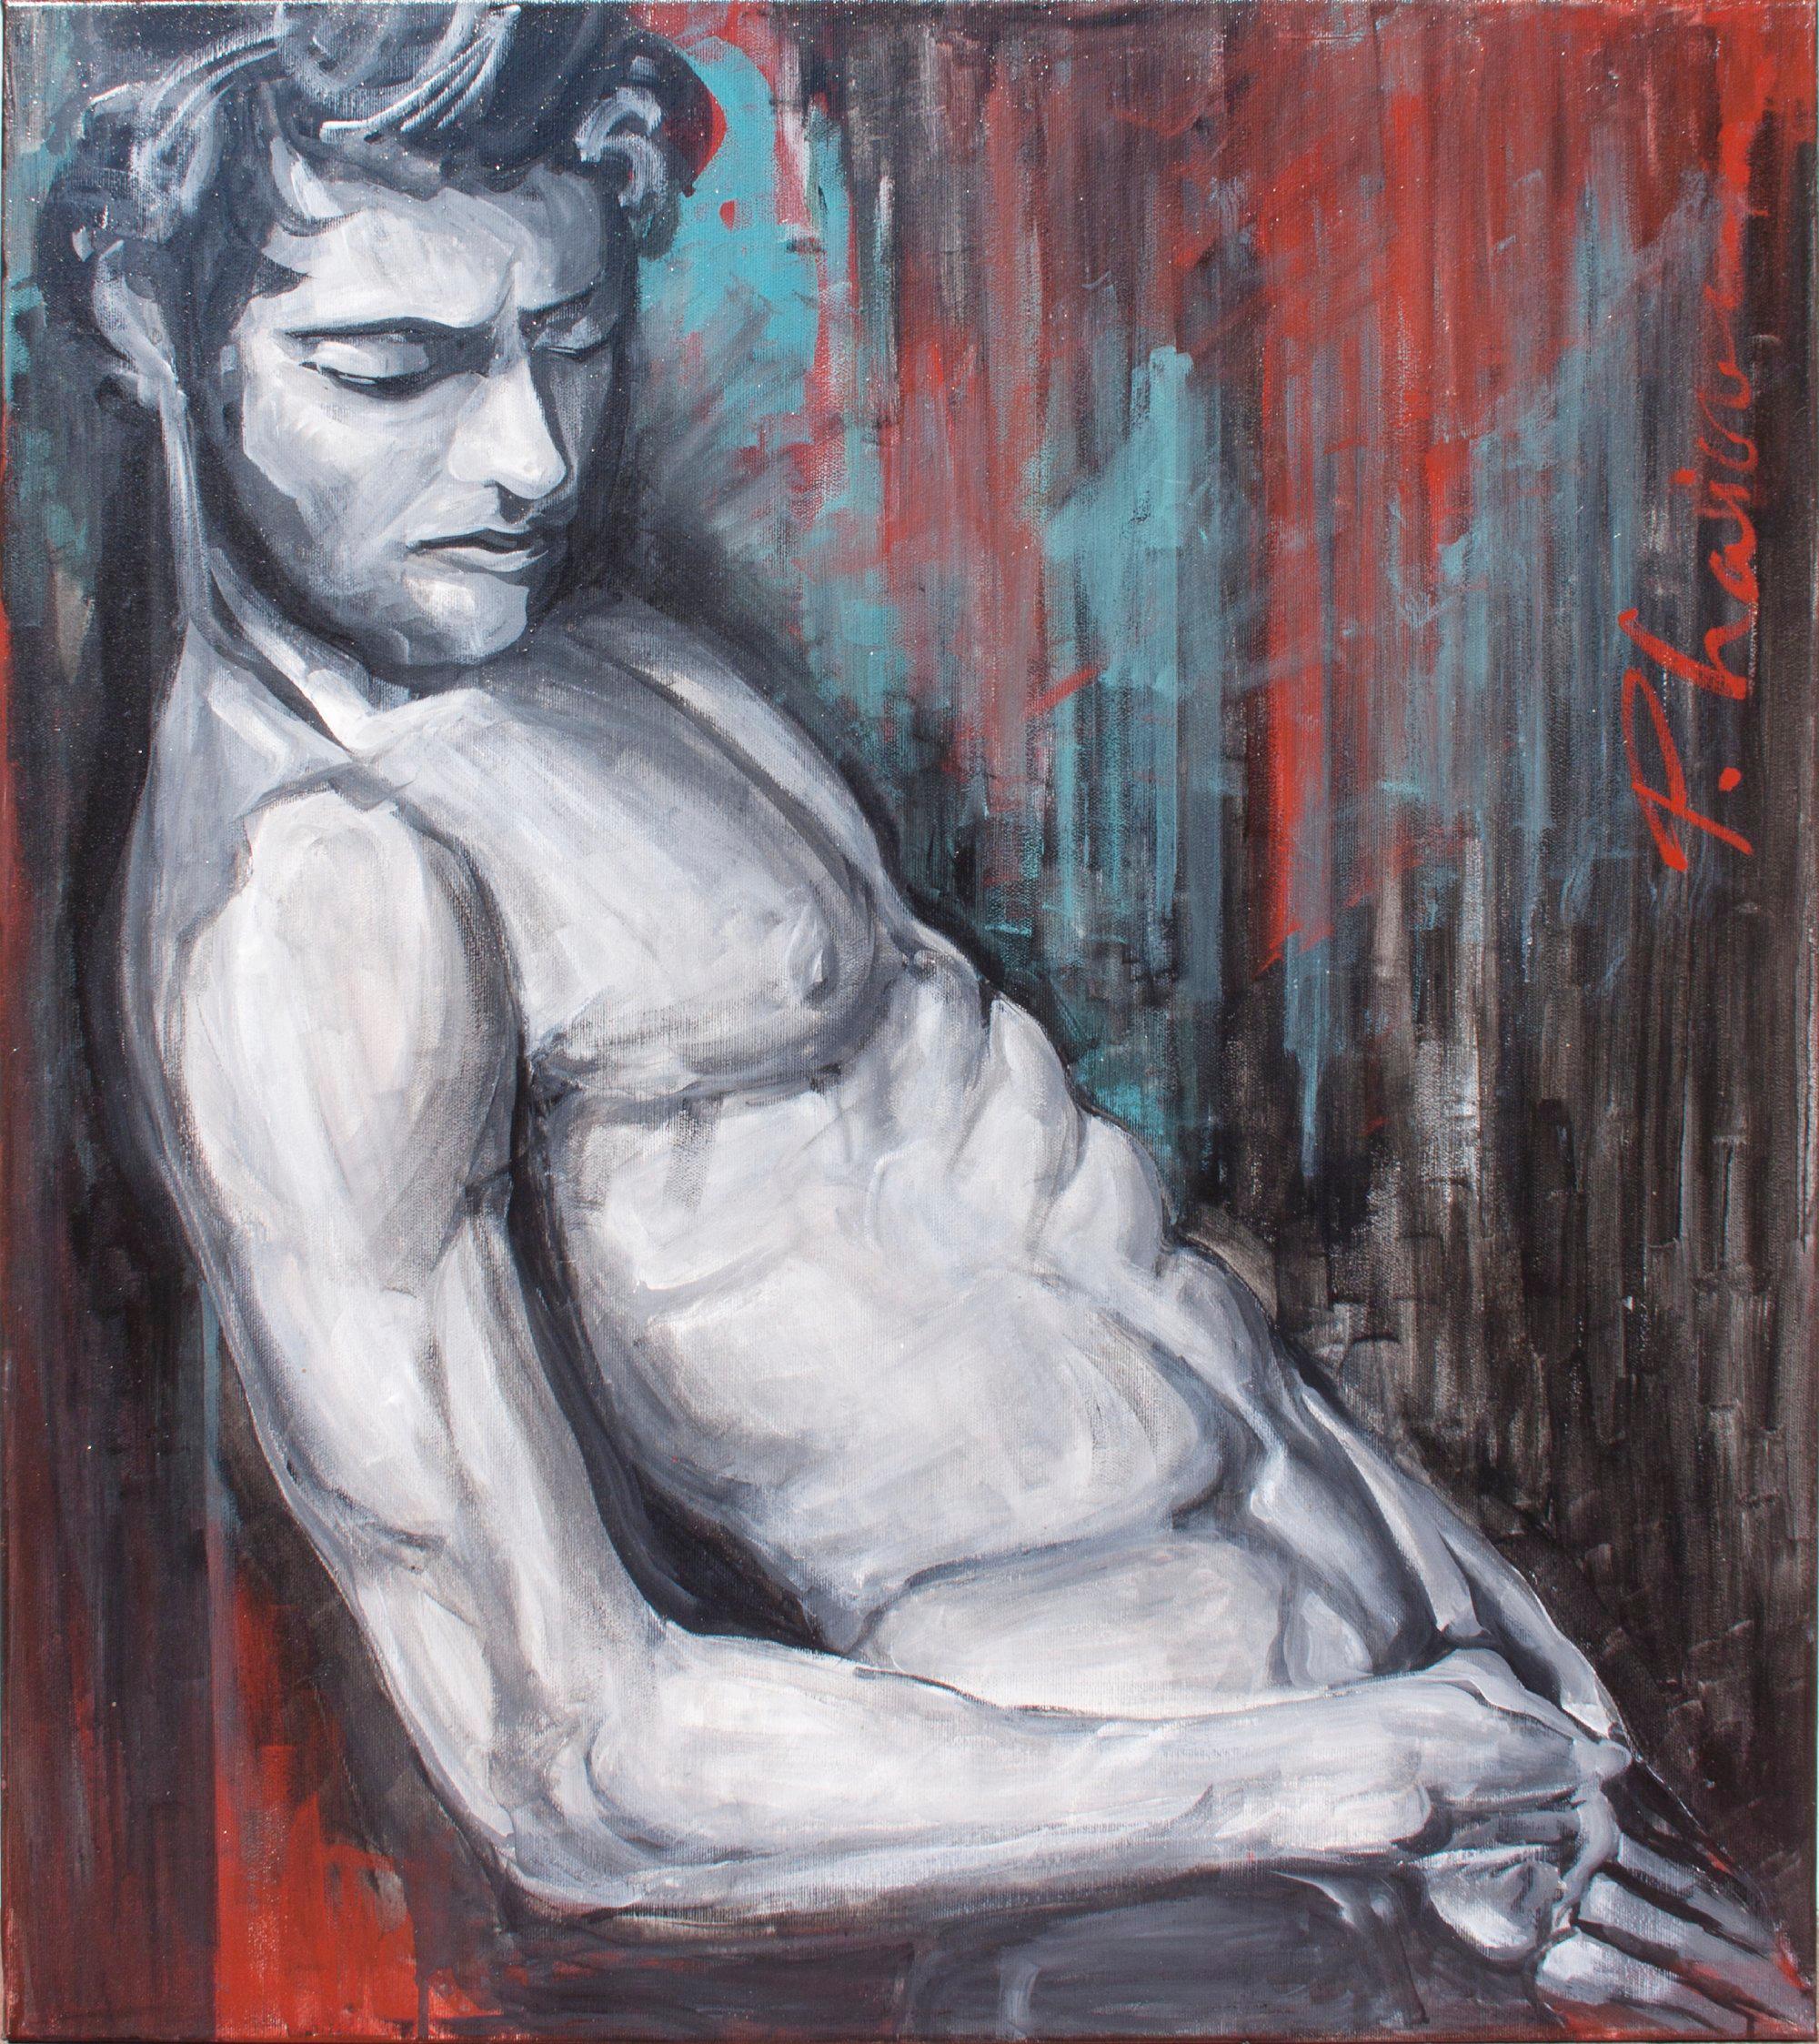 Nu masculin couché. Taille 31.5x21.5in / 70x60cm Peint en 2013. 
Fait partie de la série "Nude Men".


Vernis et prêt à être accroché. Expédition depuis Forest Hilles, NY, étiré, dans une boîte, directement de l'artiste.

Cette peinture a fait